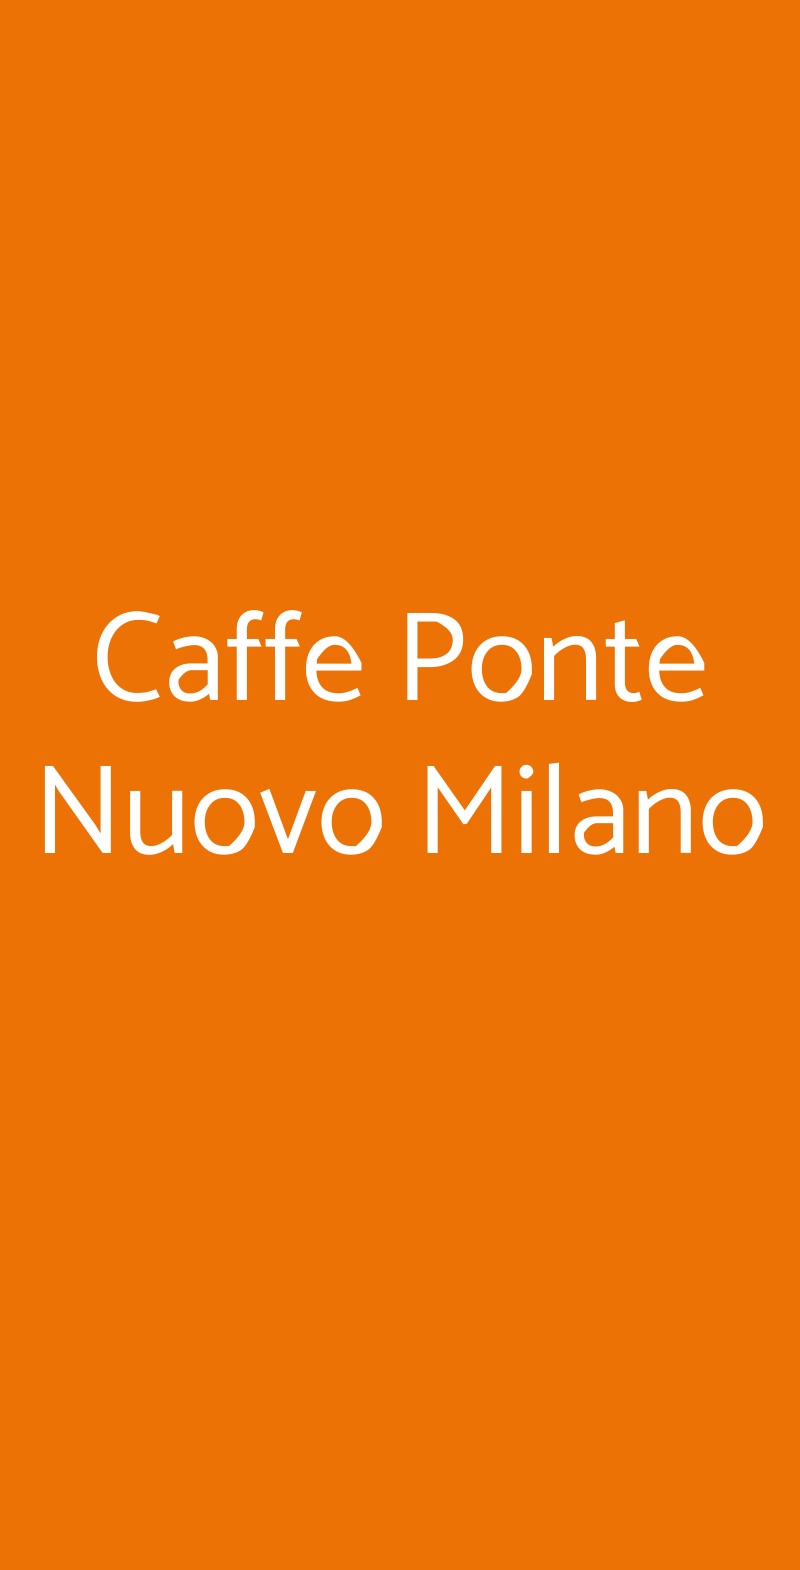 Caffe Ponte Nuovo Milano Milano menù 1 pagina